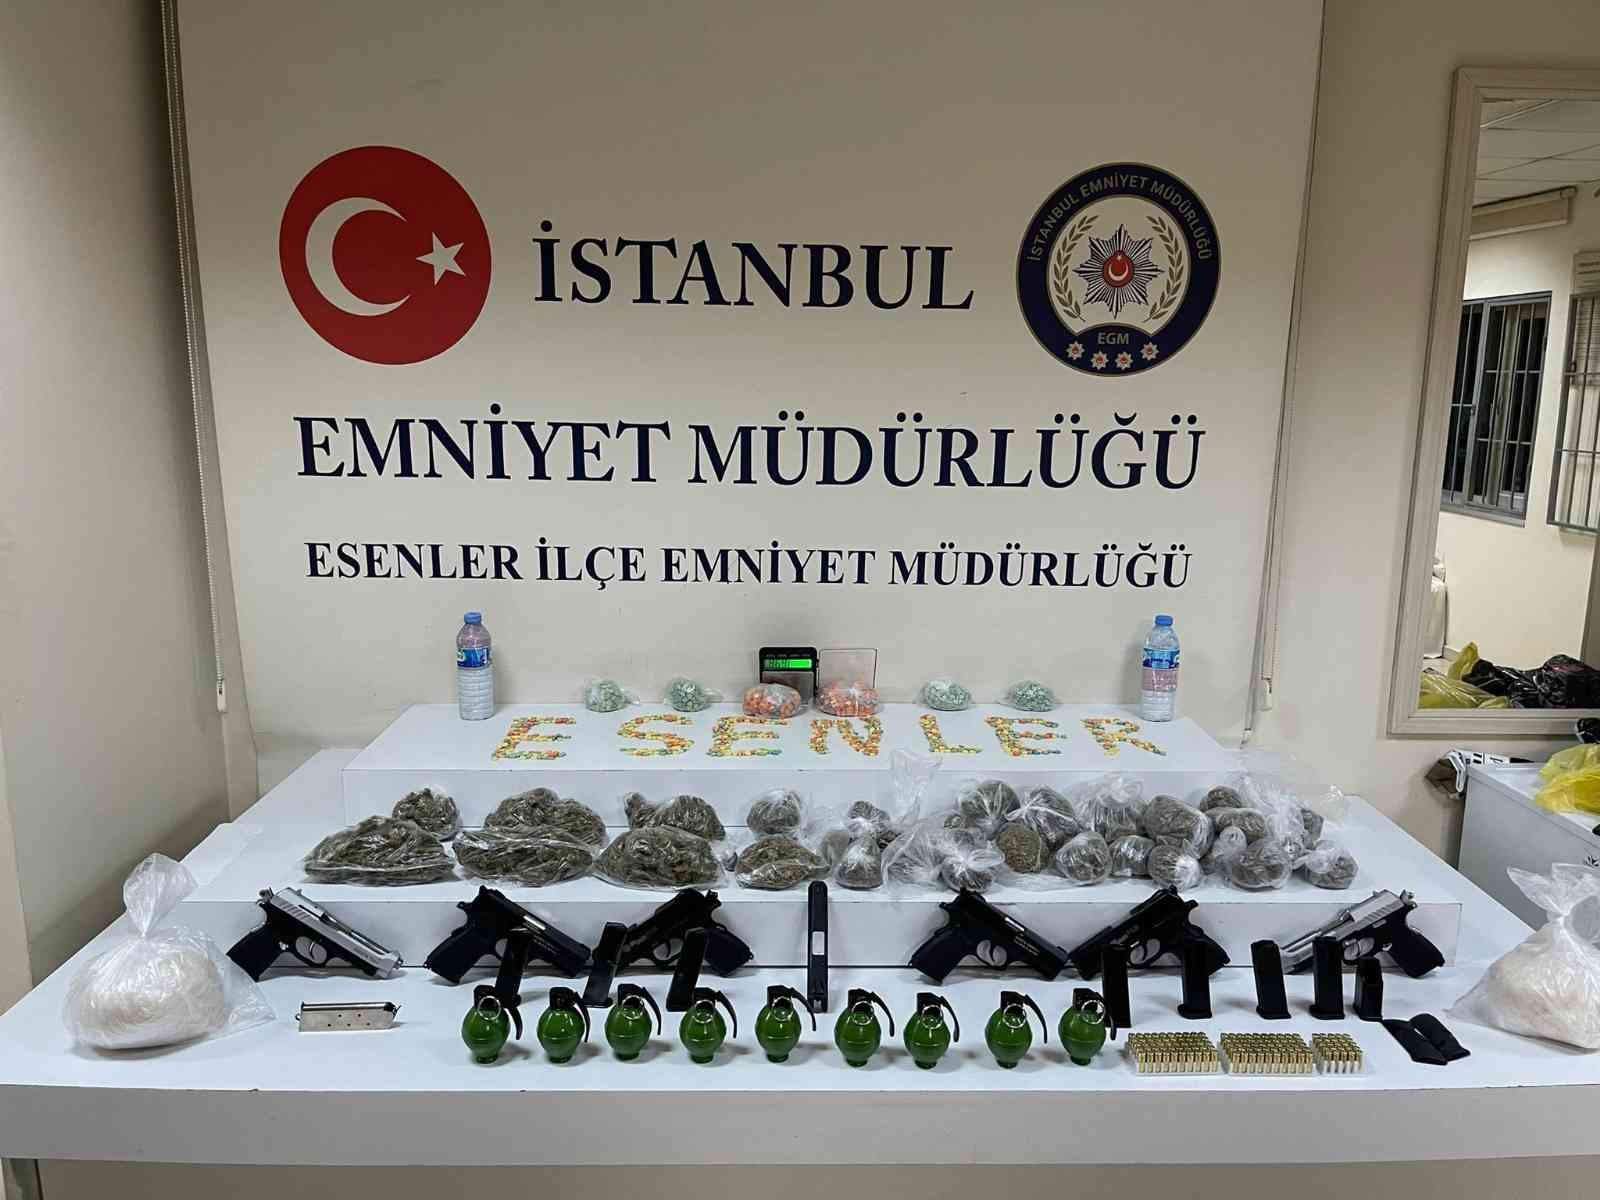 Uyuşturucu operasyonunda 9 adet el bombası ele geçirildi #istanbul